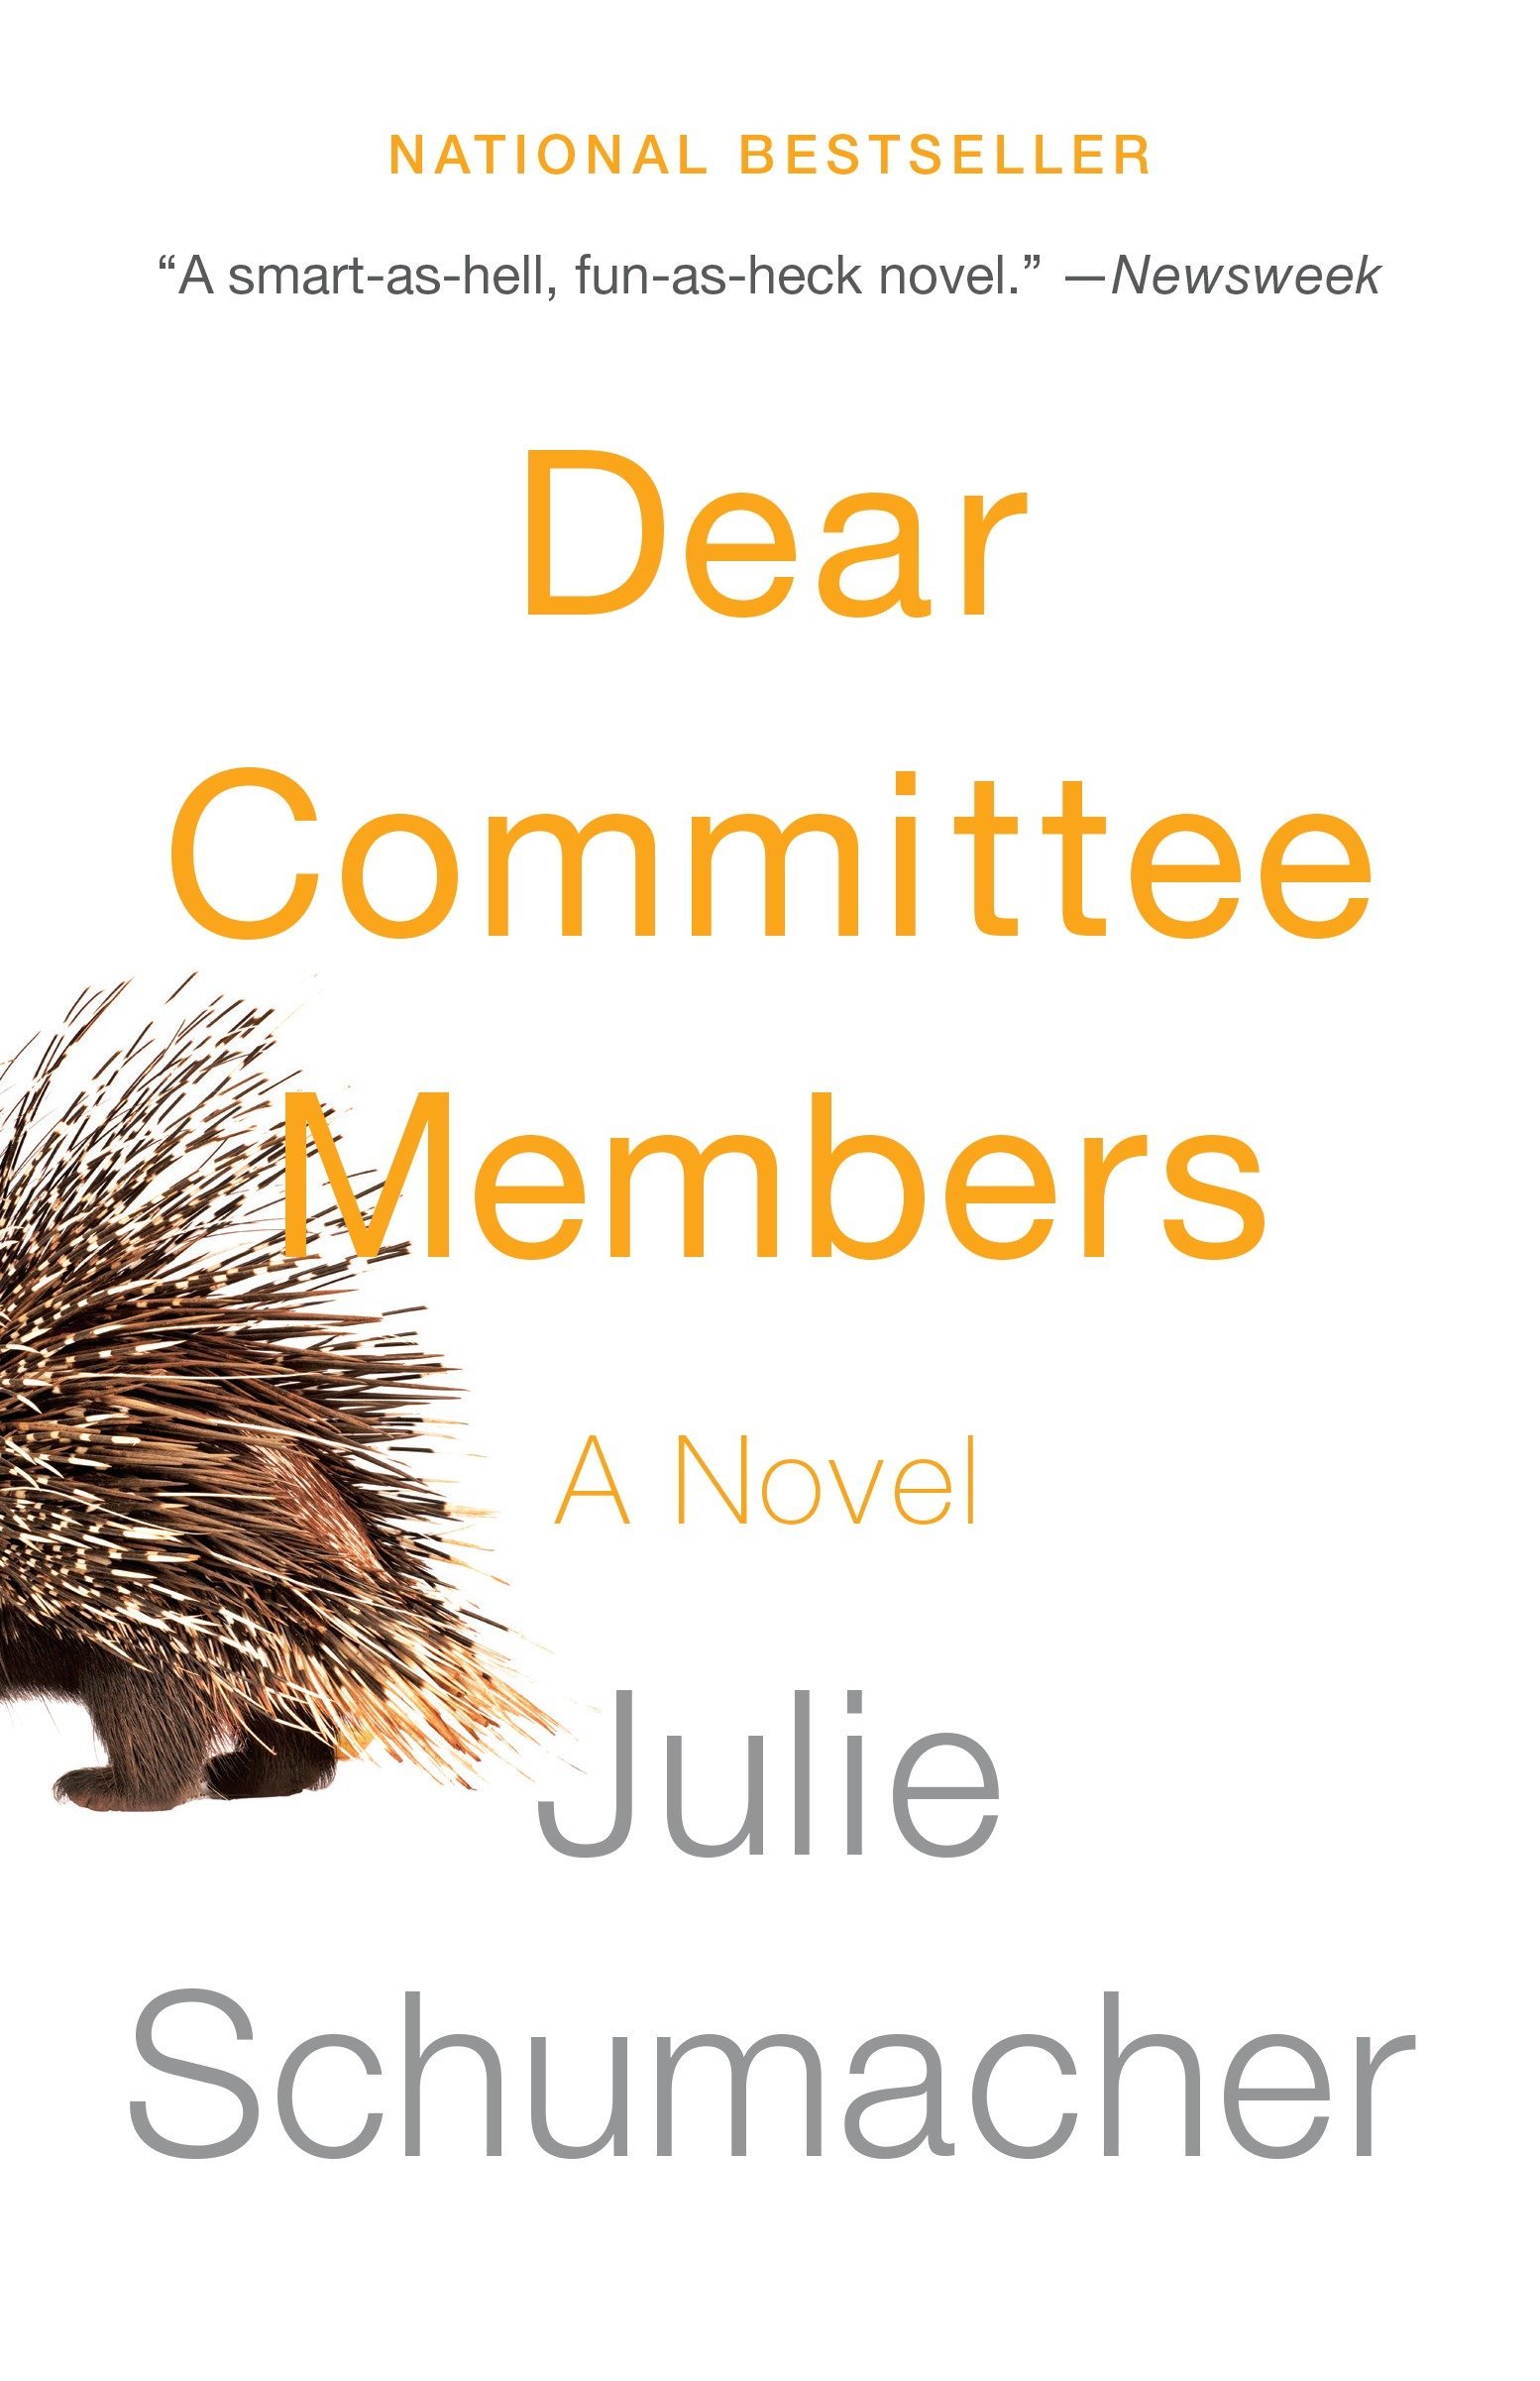 'Dear Committee Members' by Julie Schumacher